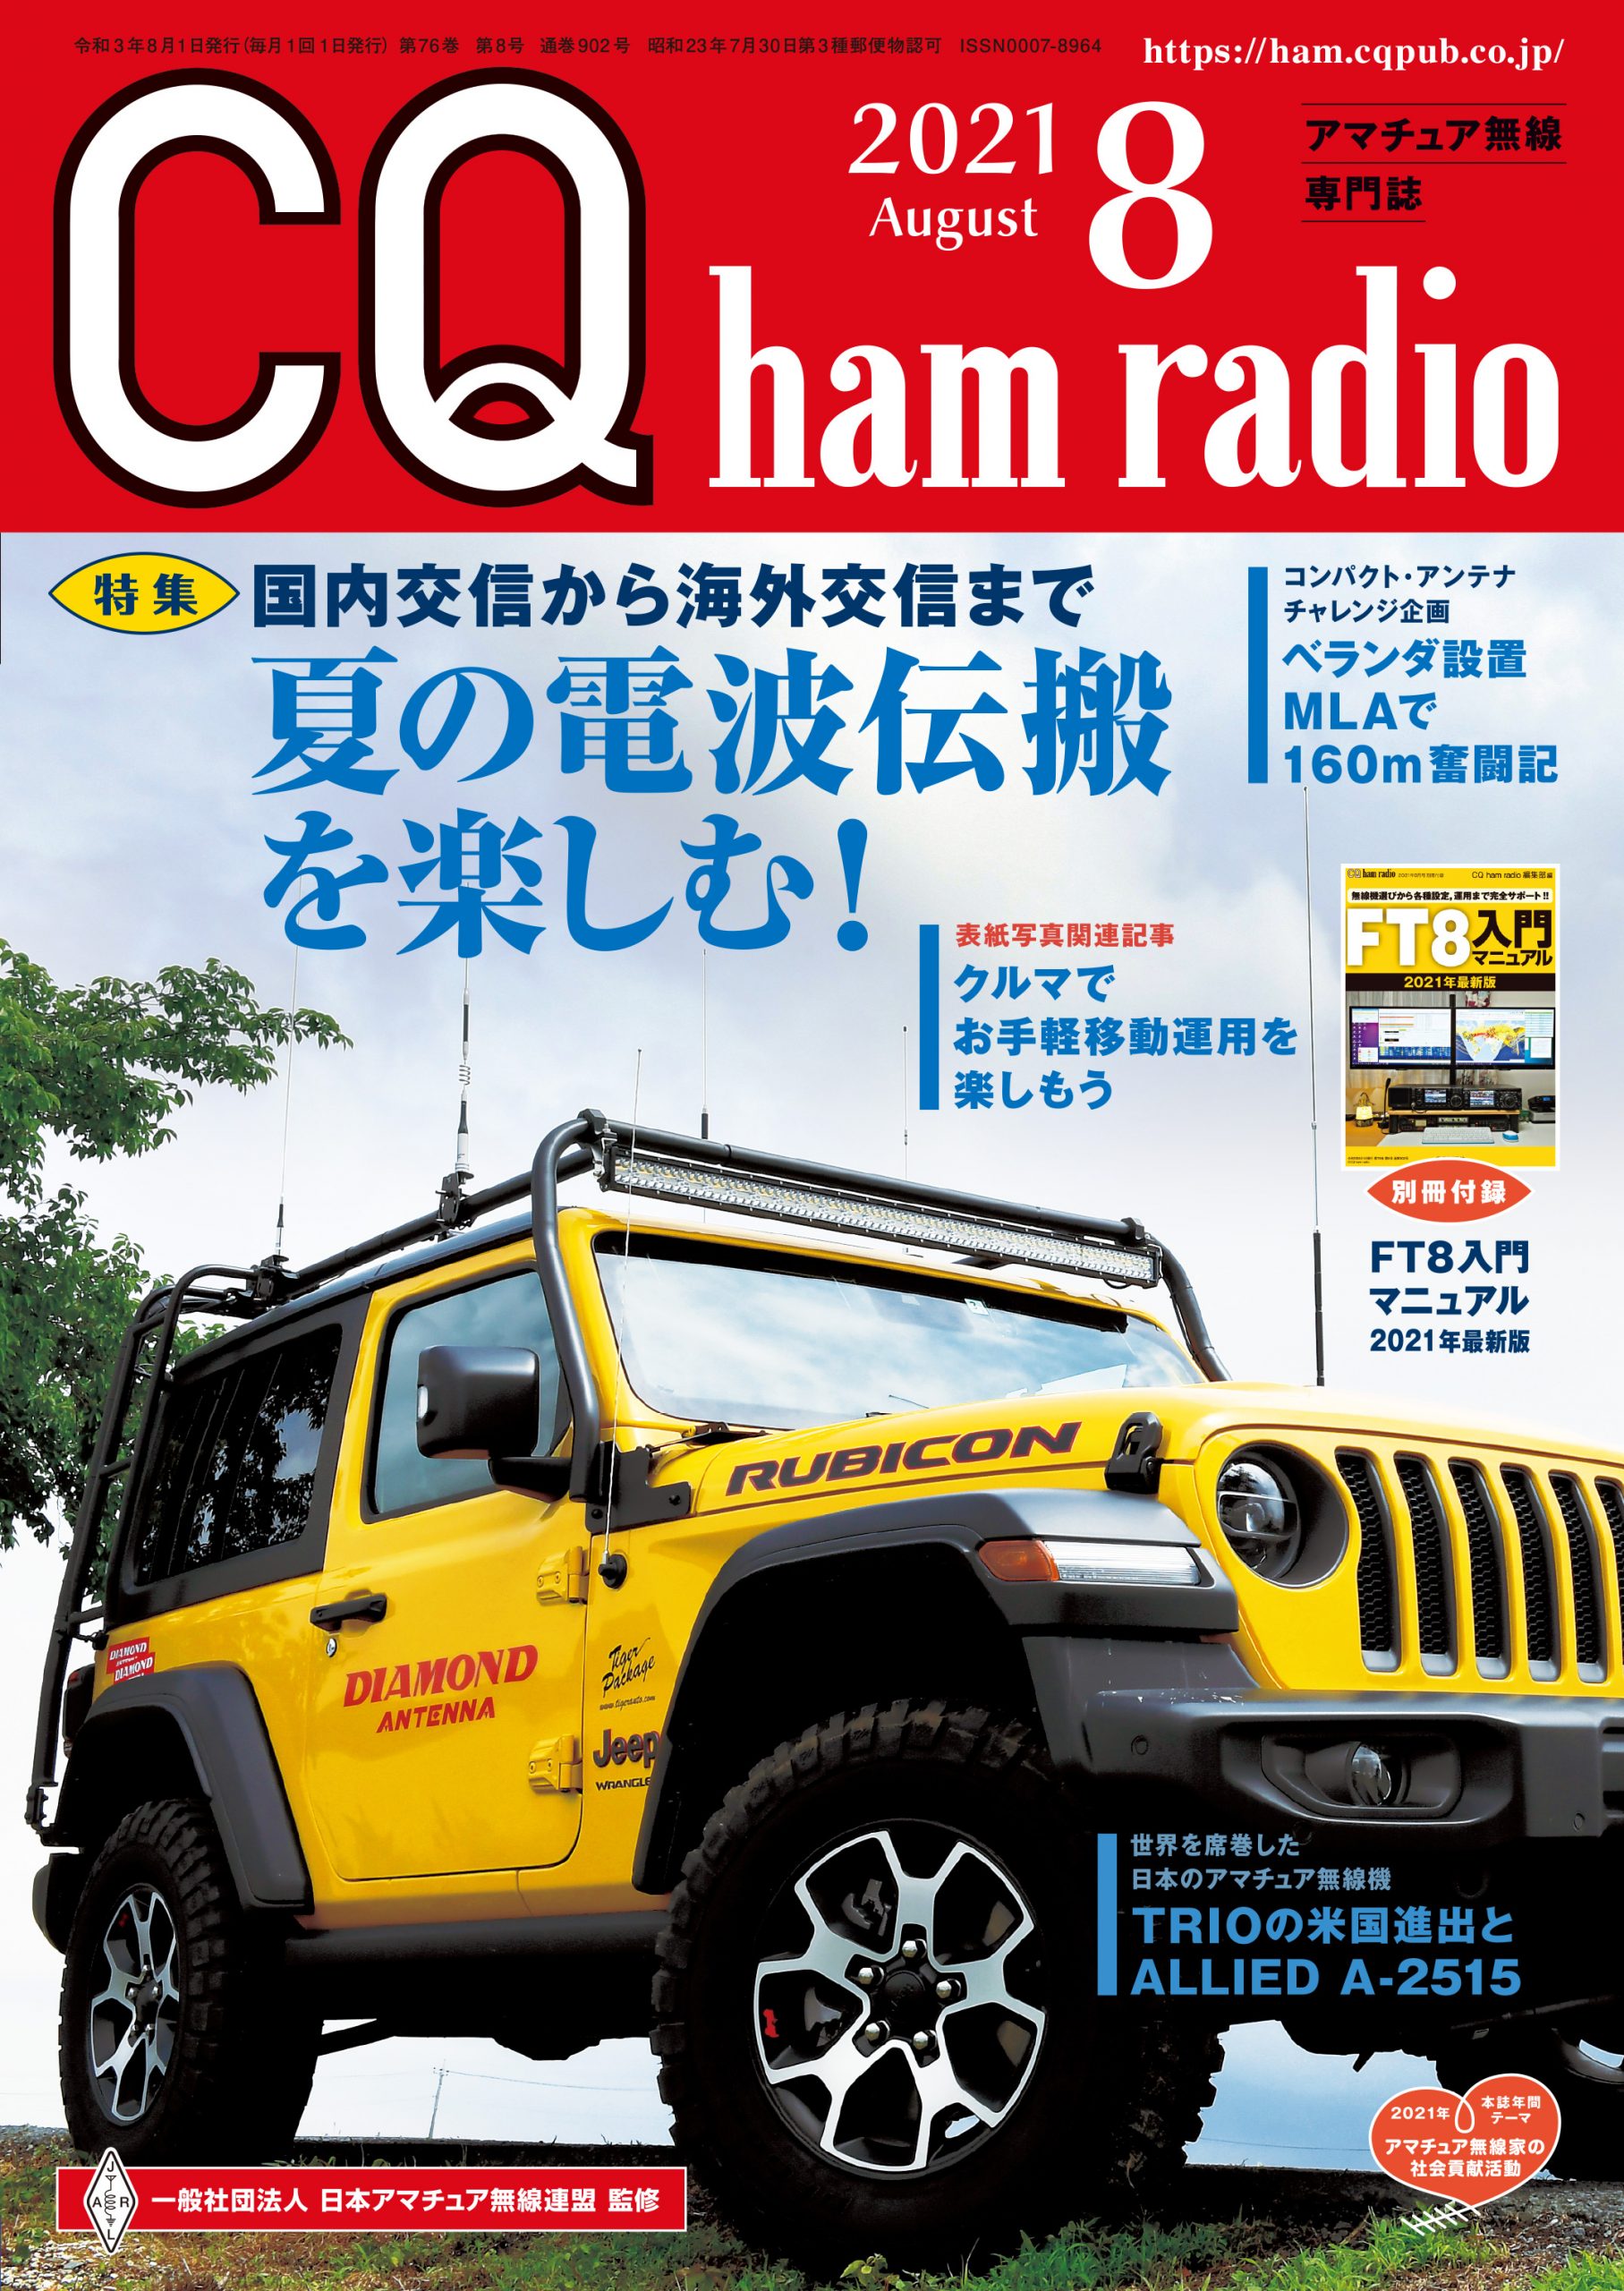 CQ ham radio 2021年 8月号